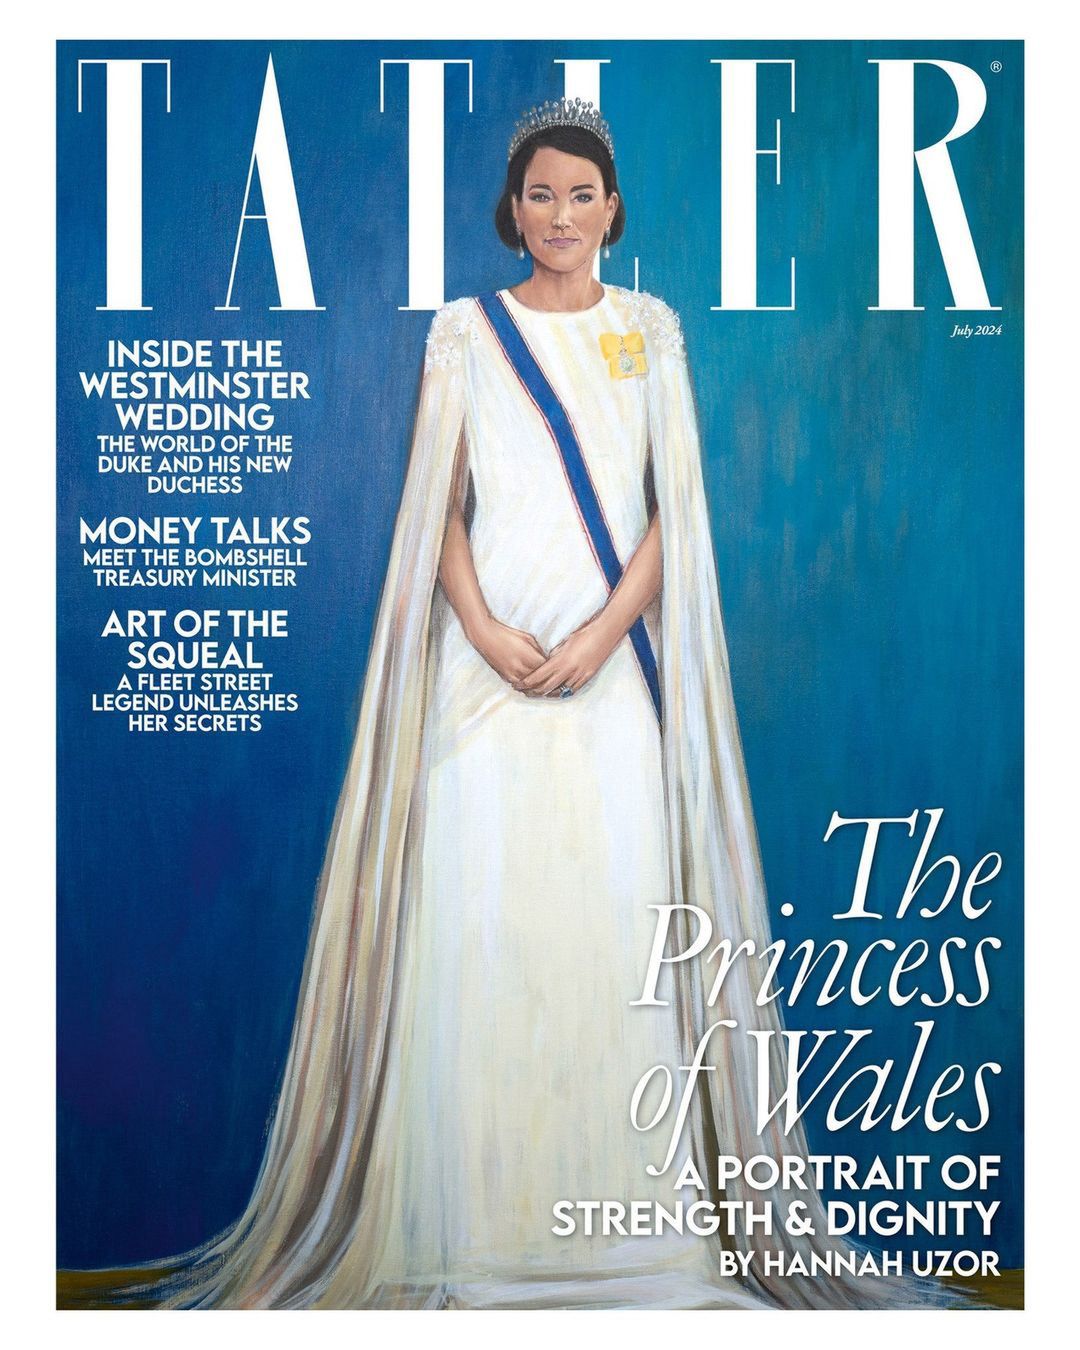 Duchess Kate on the cover of "Tatler" magazine